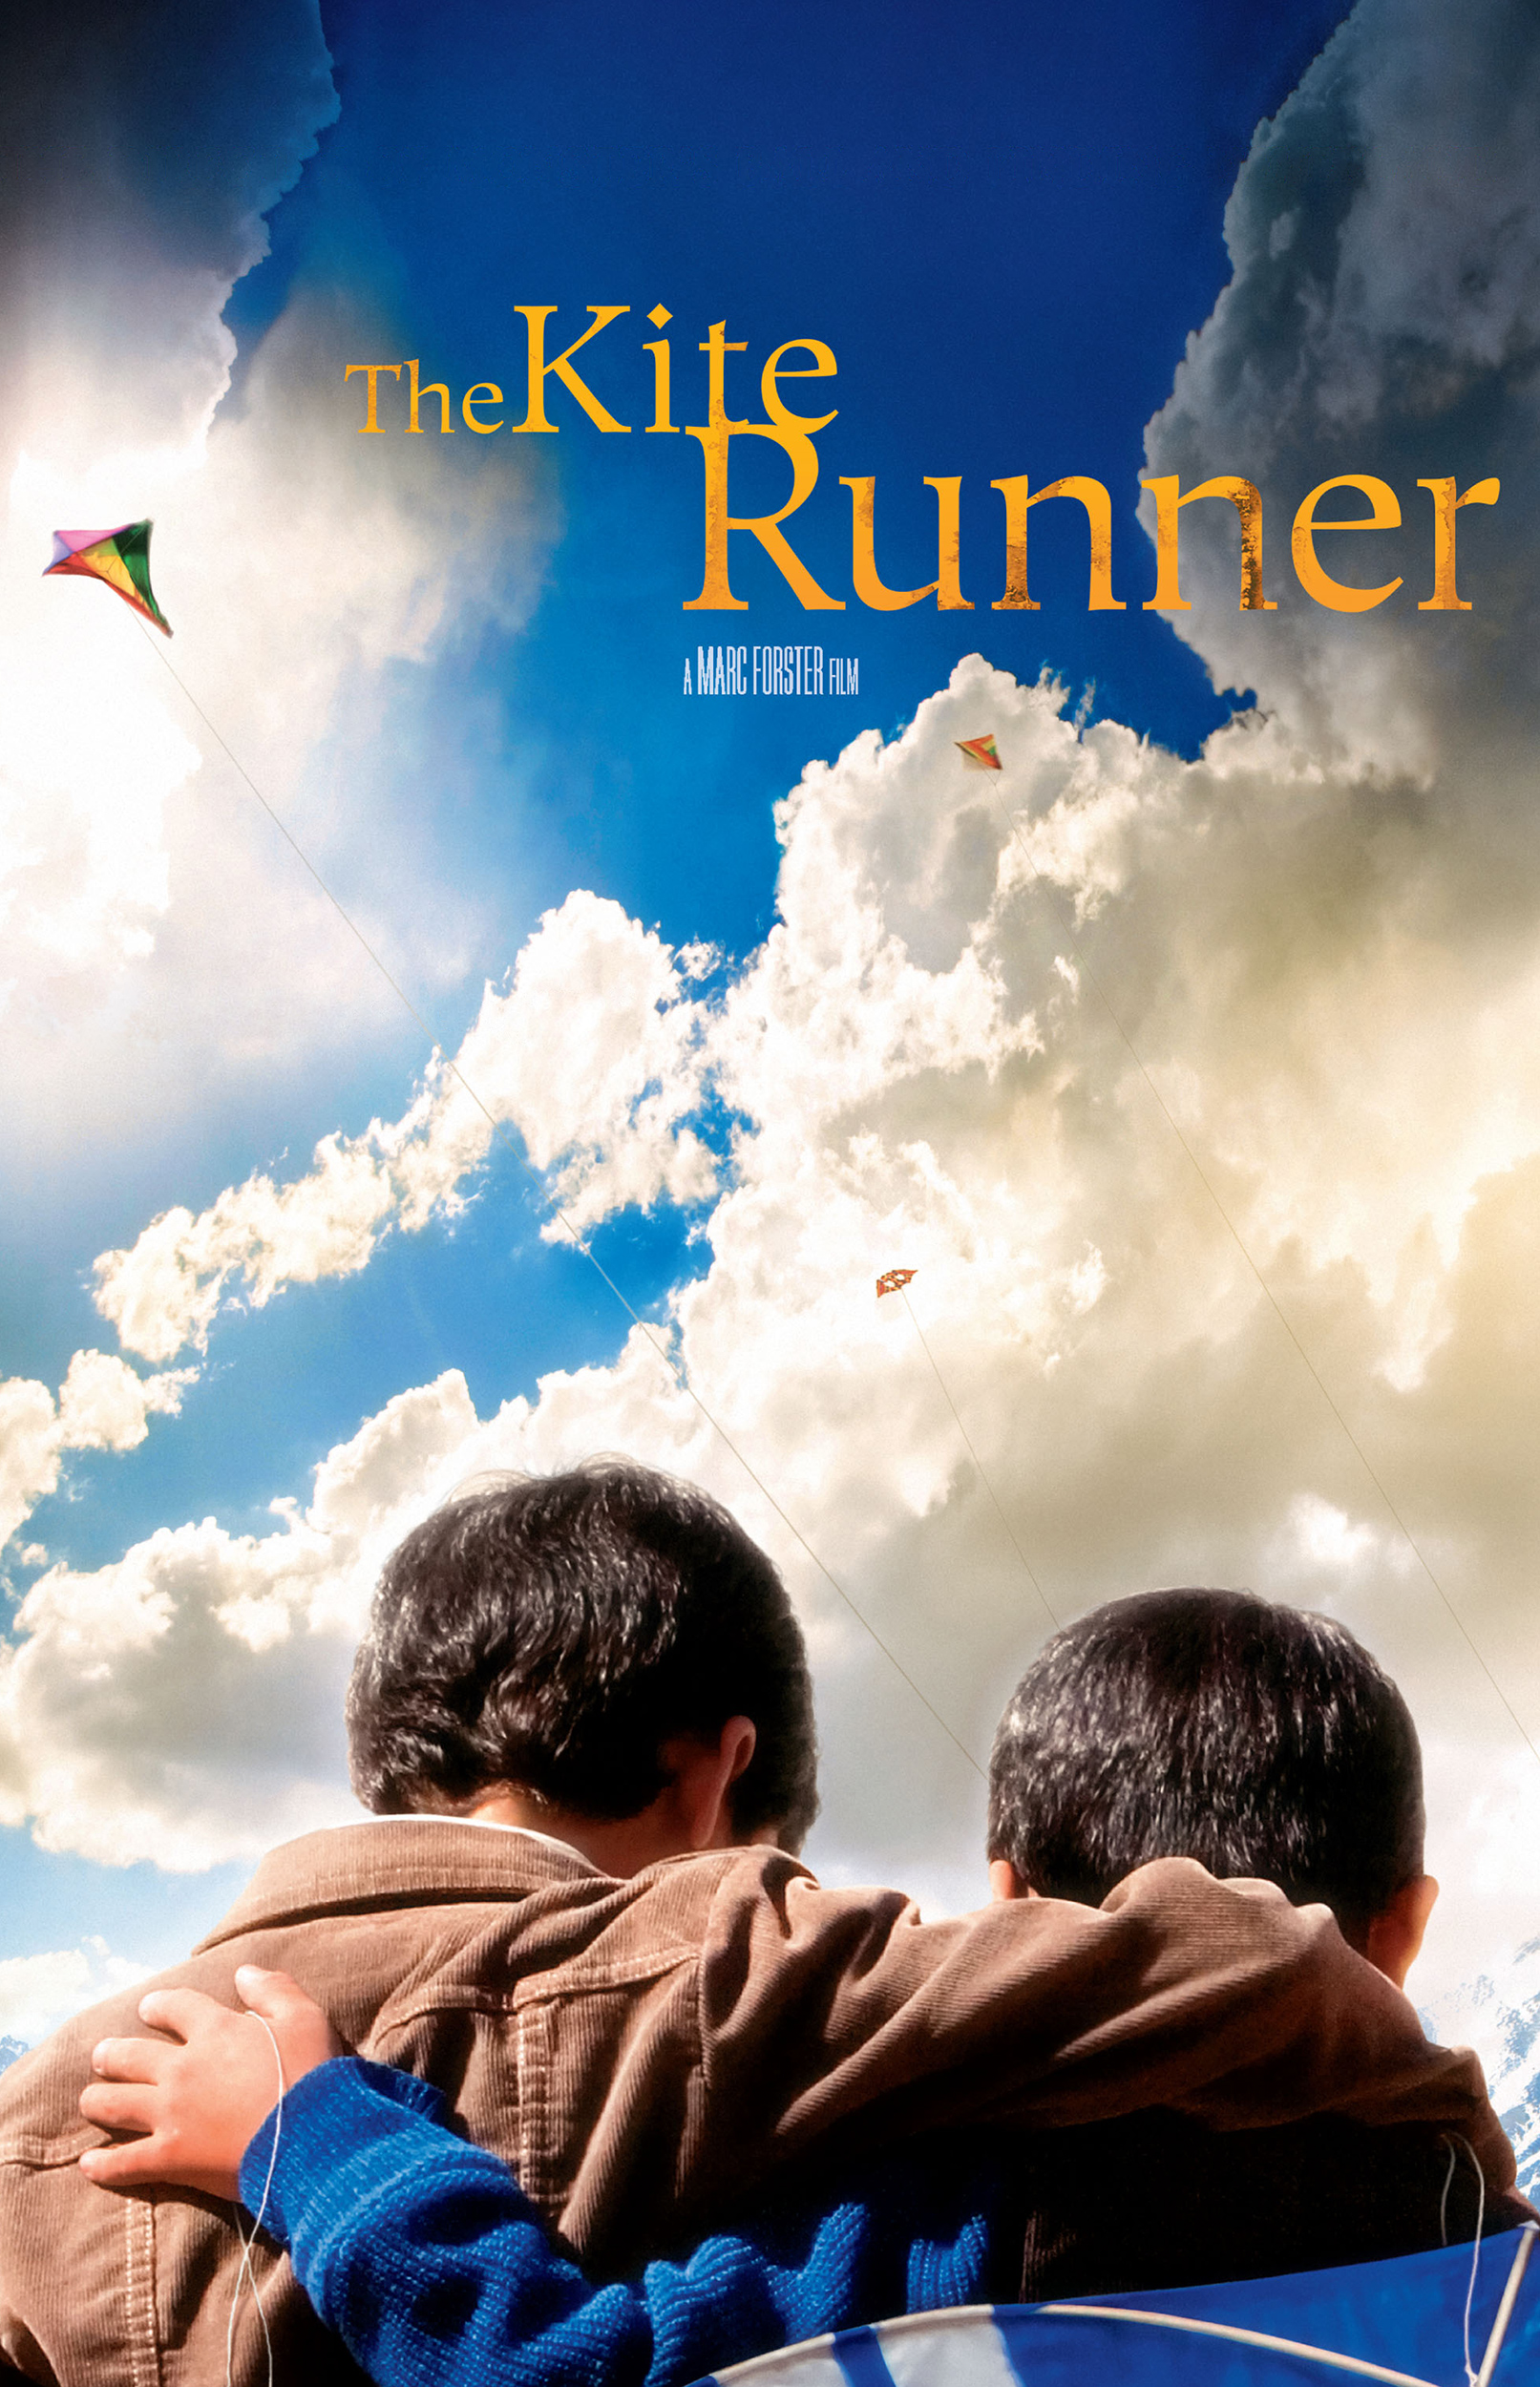 movie review on kite runner